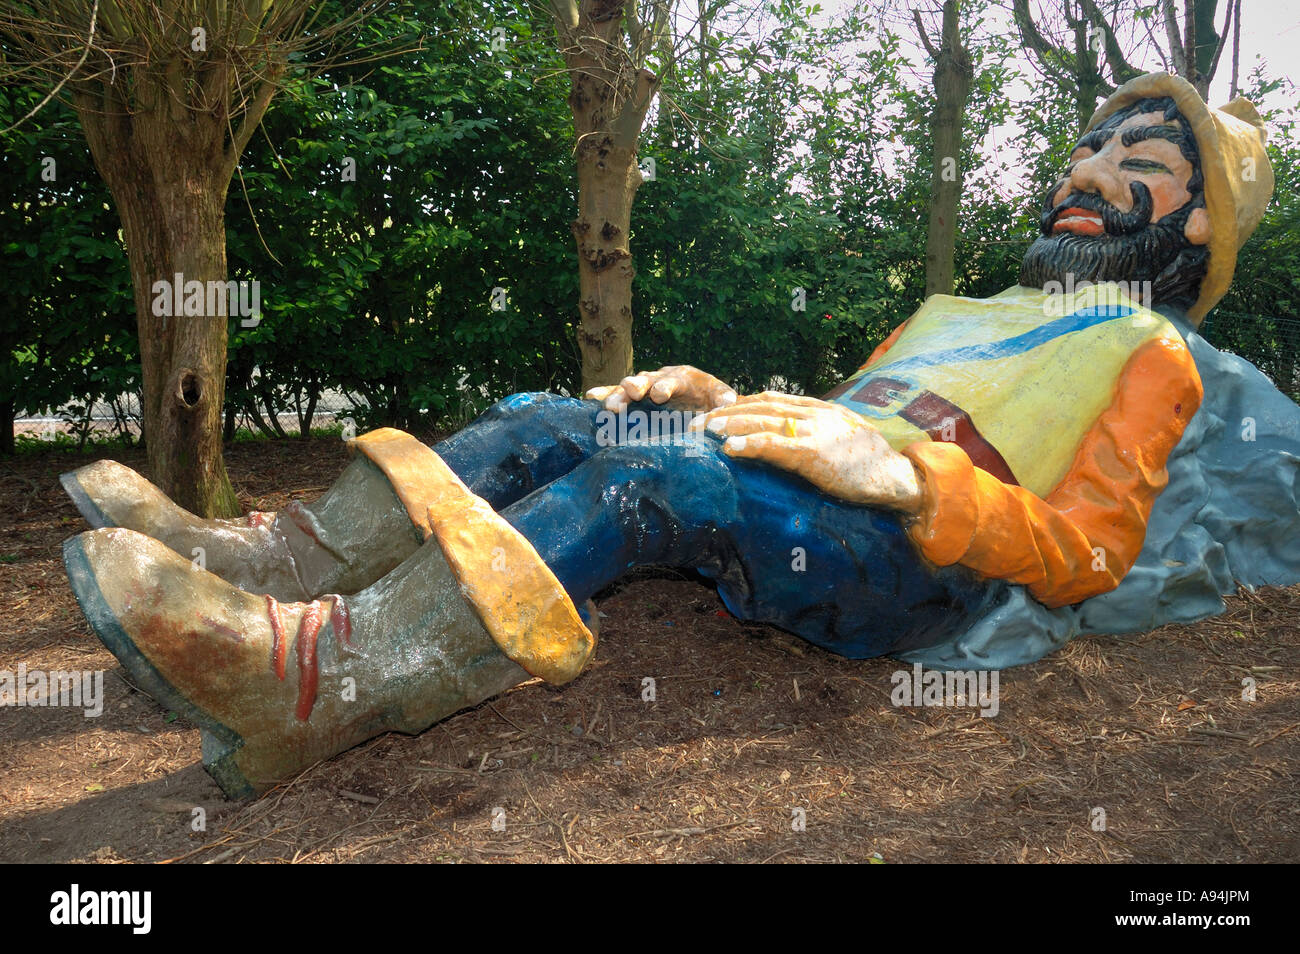 Le géant dans les bois. Une sculpture en fibre de verre d'un géant pour les enfants à jouer sur Banque D'Images